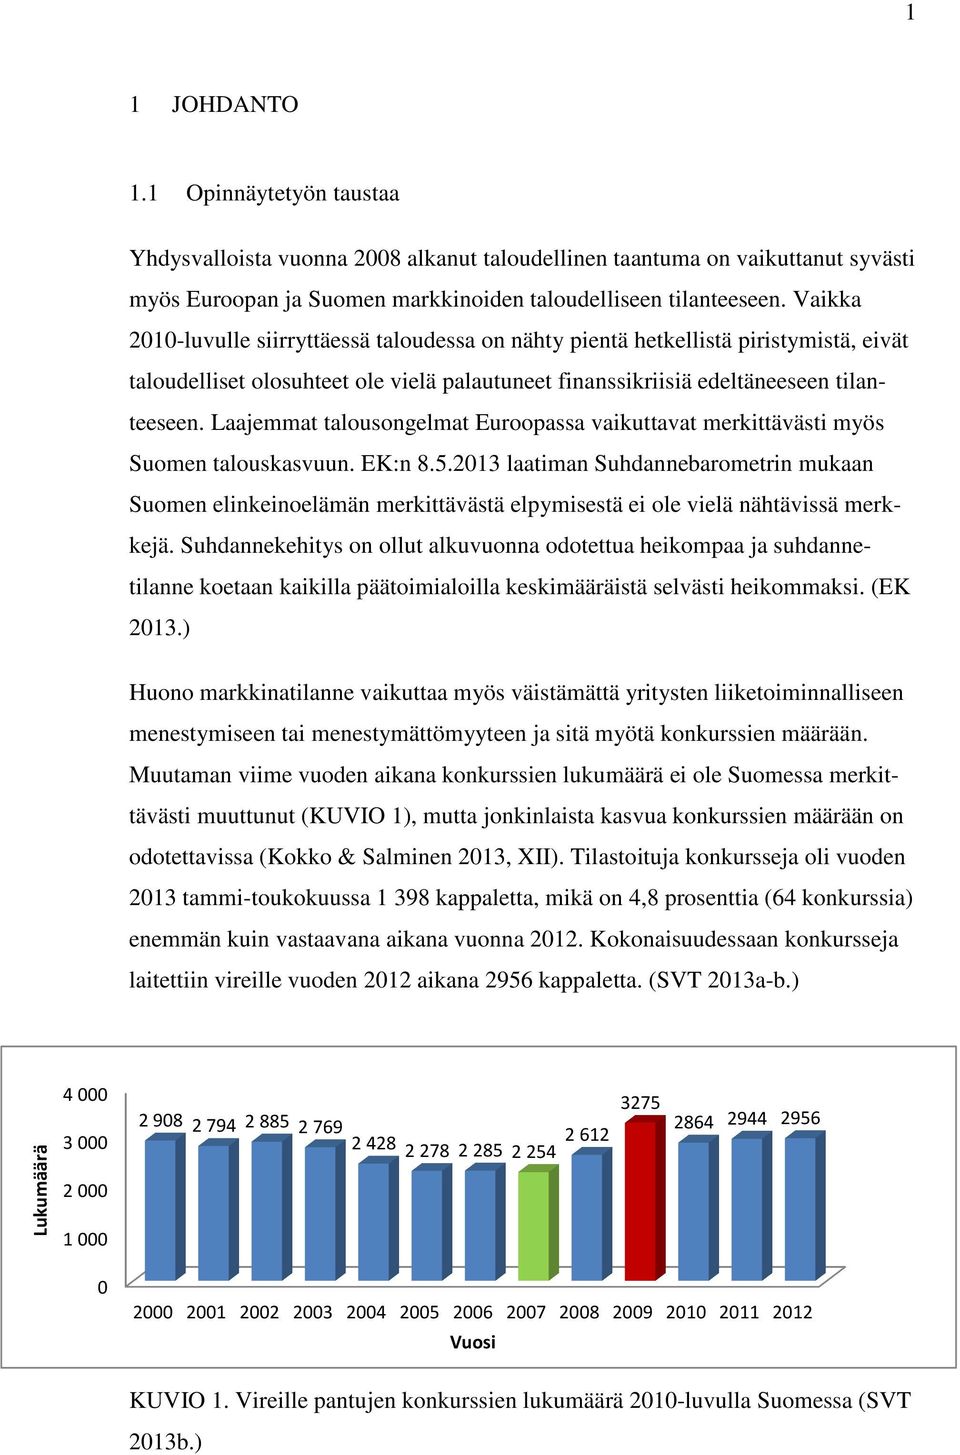 Laajemmat talousongelmat Euroopassa vaikuttavat merkittävästi myös Suomen talouskasvuun. EK:n 8.5.